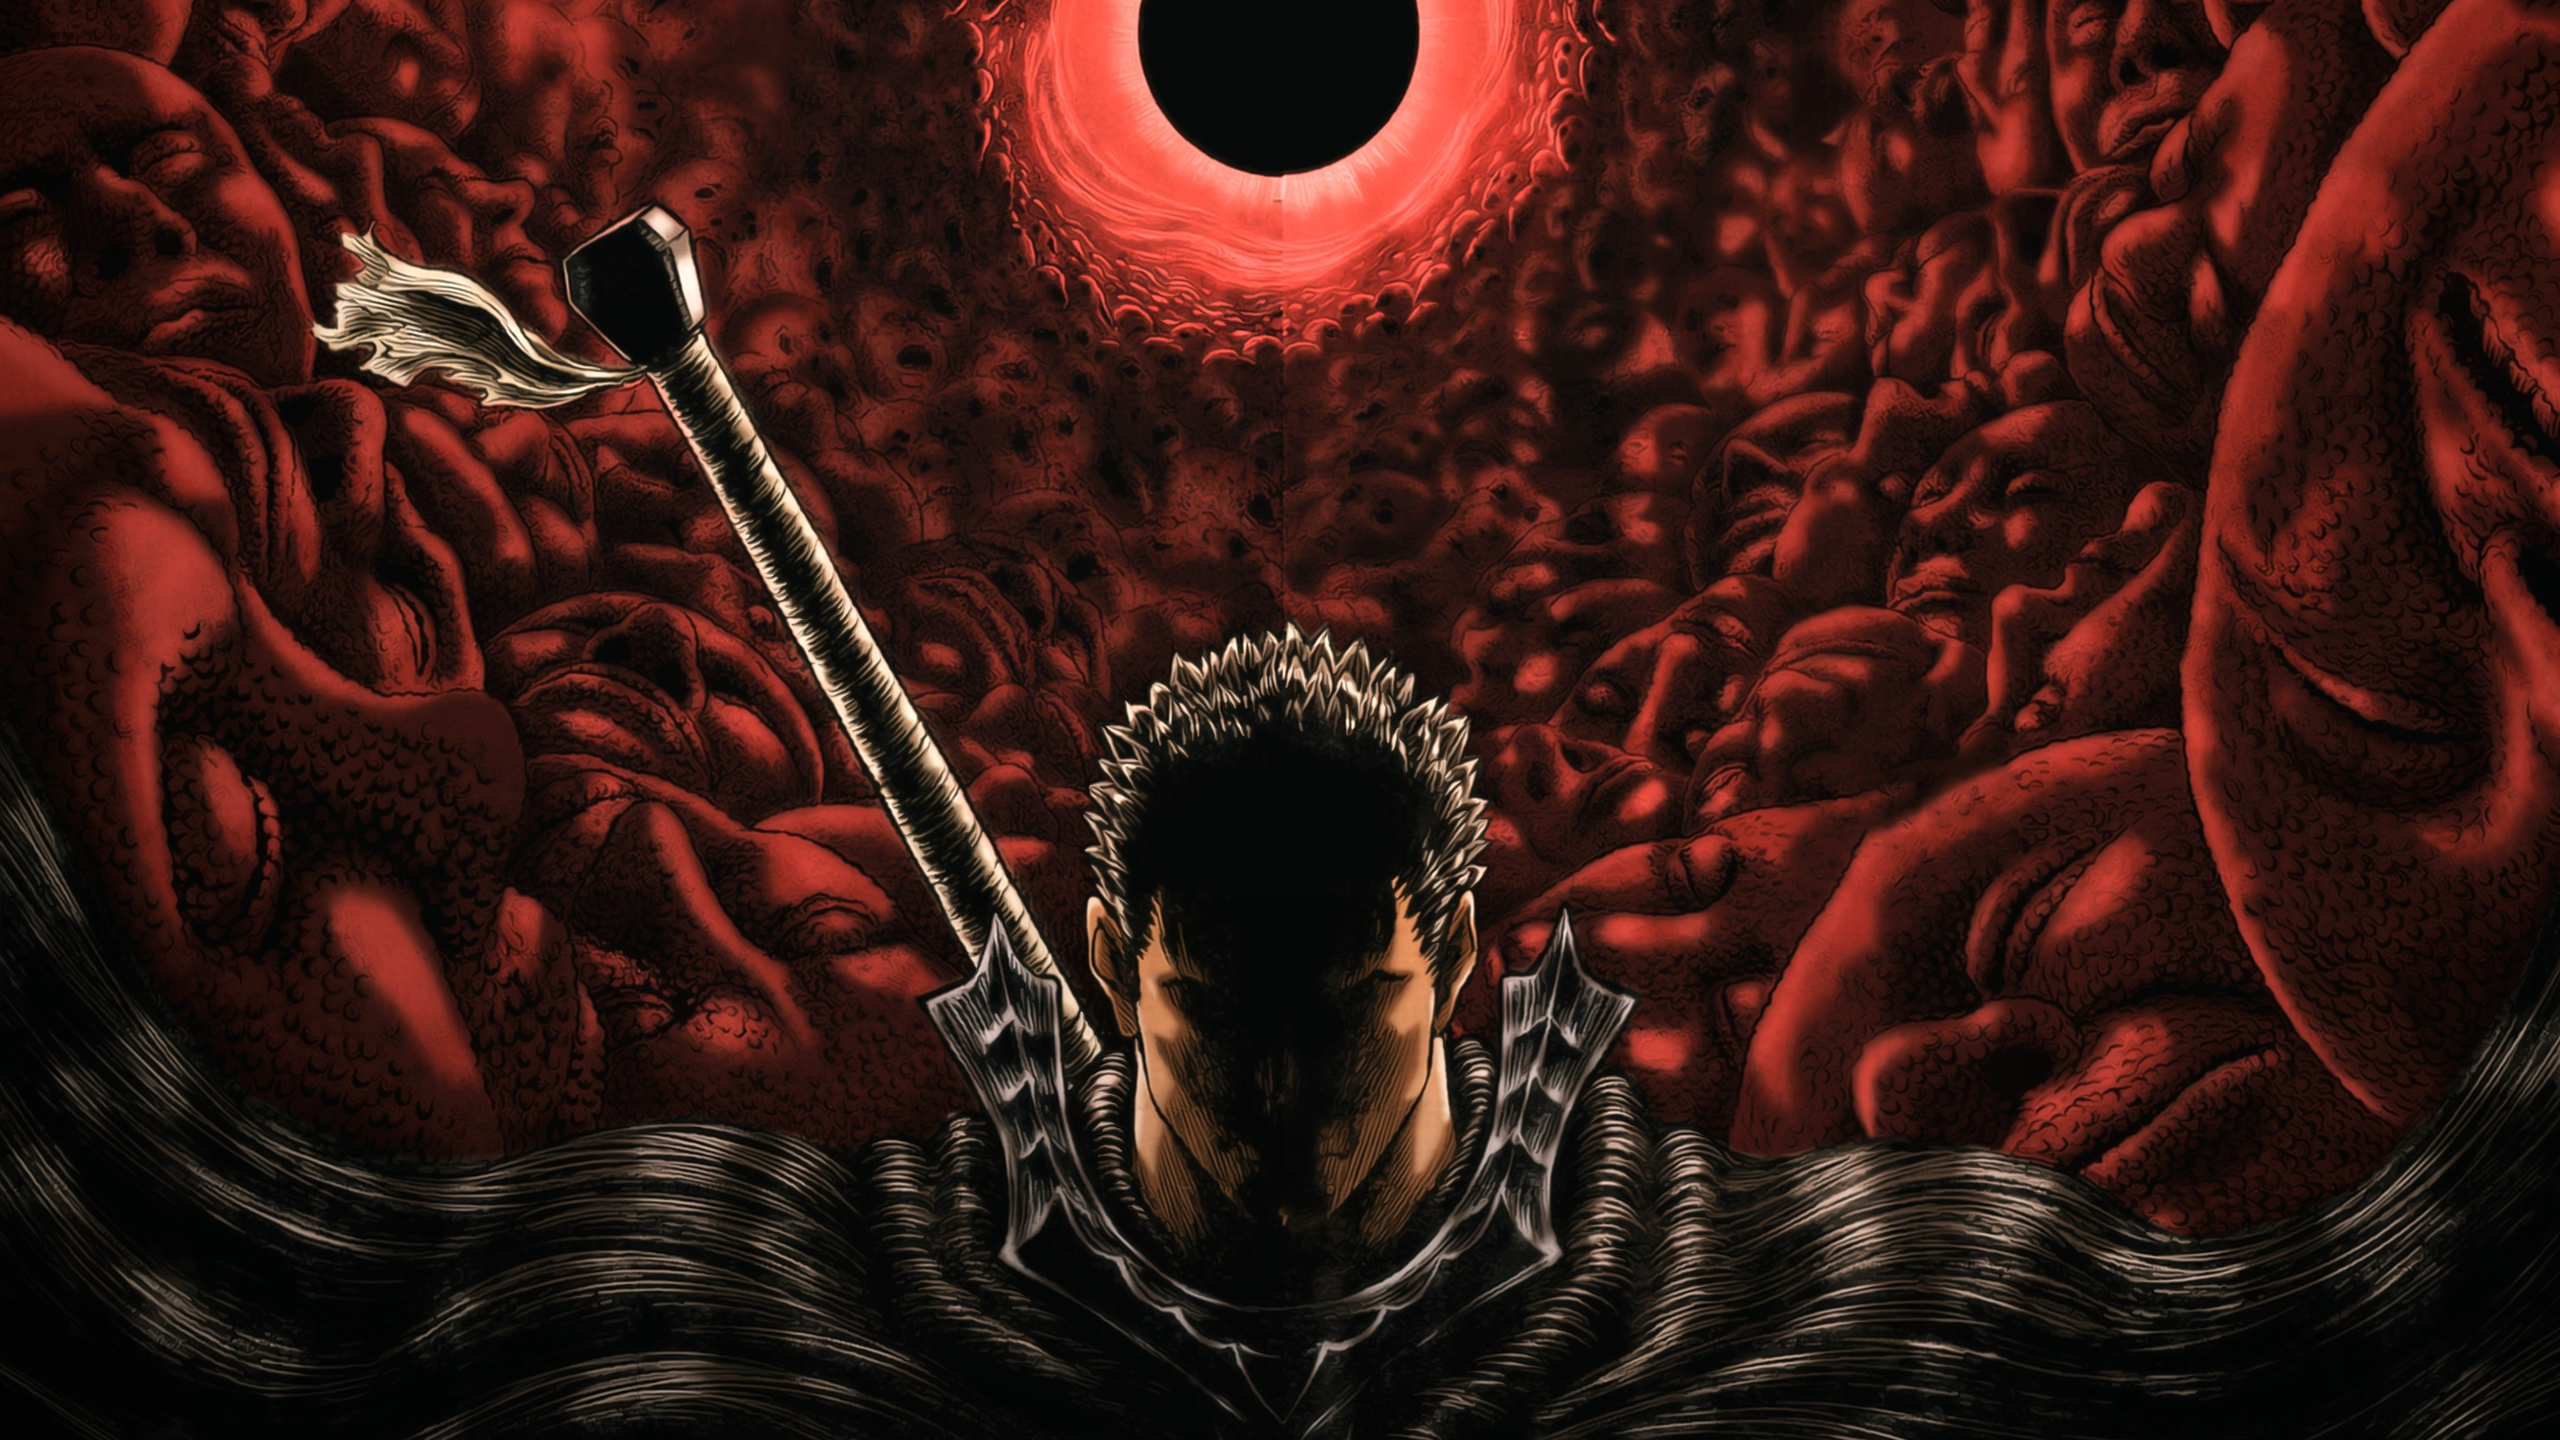 Guts Eclipse Berserk Anime Manga Sword 2560x1440